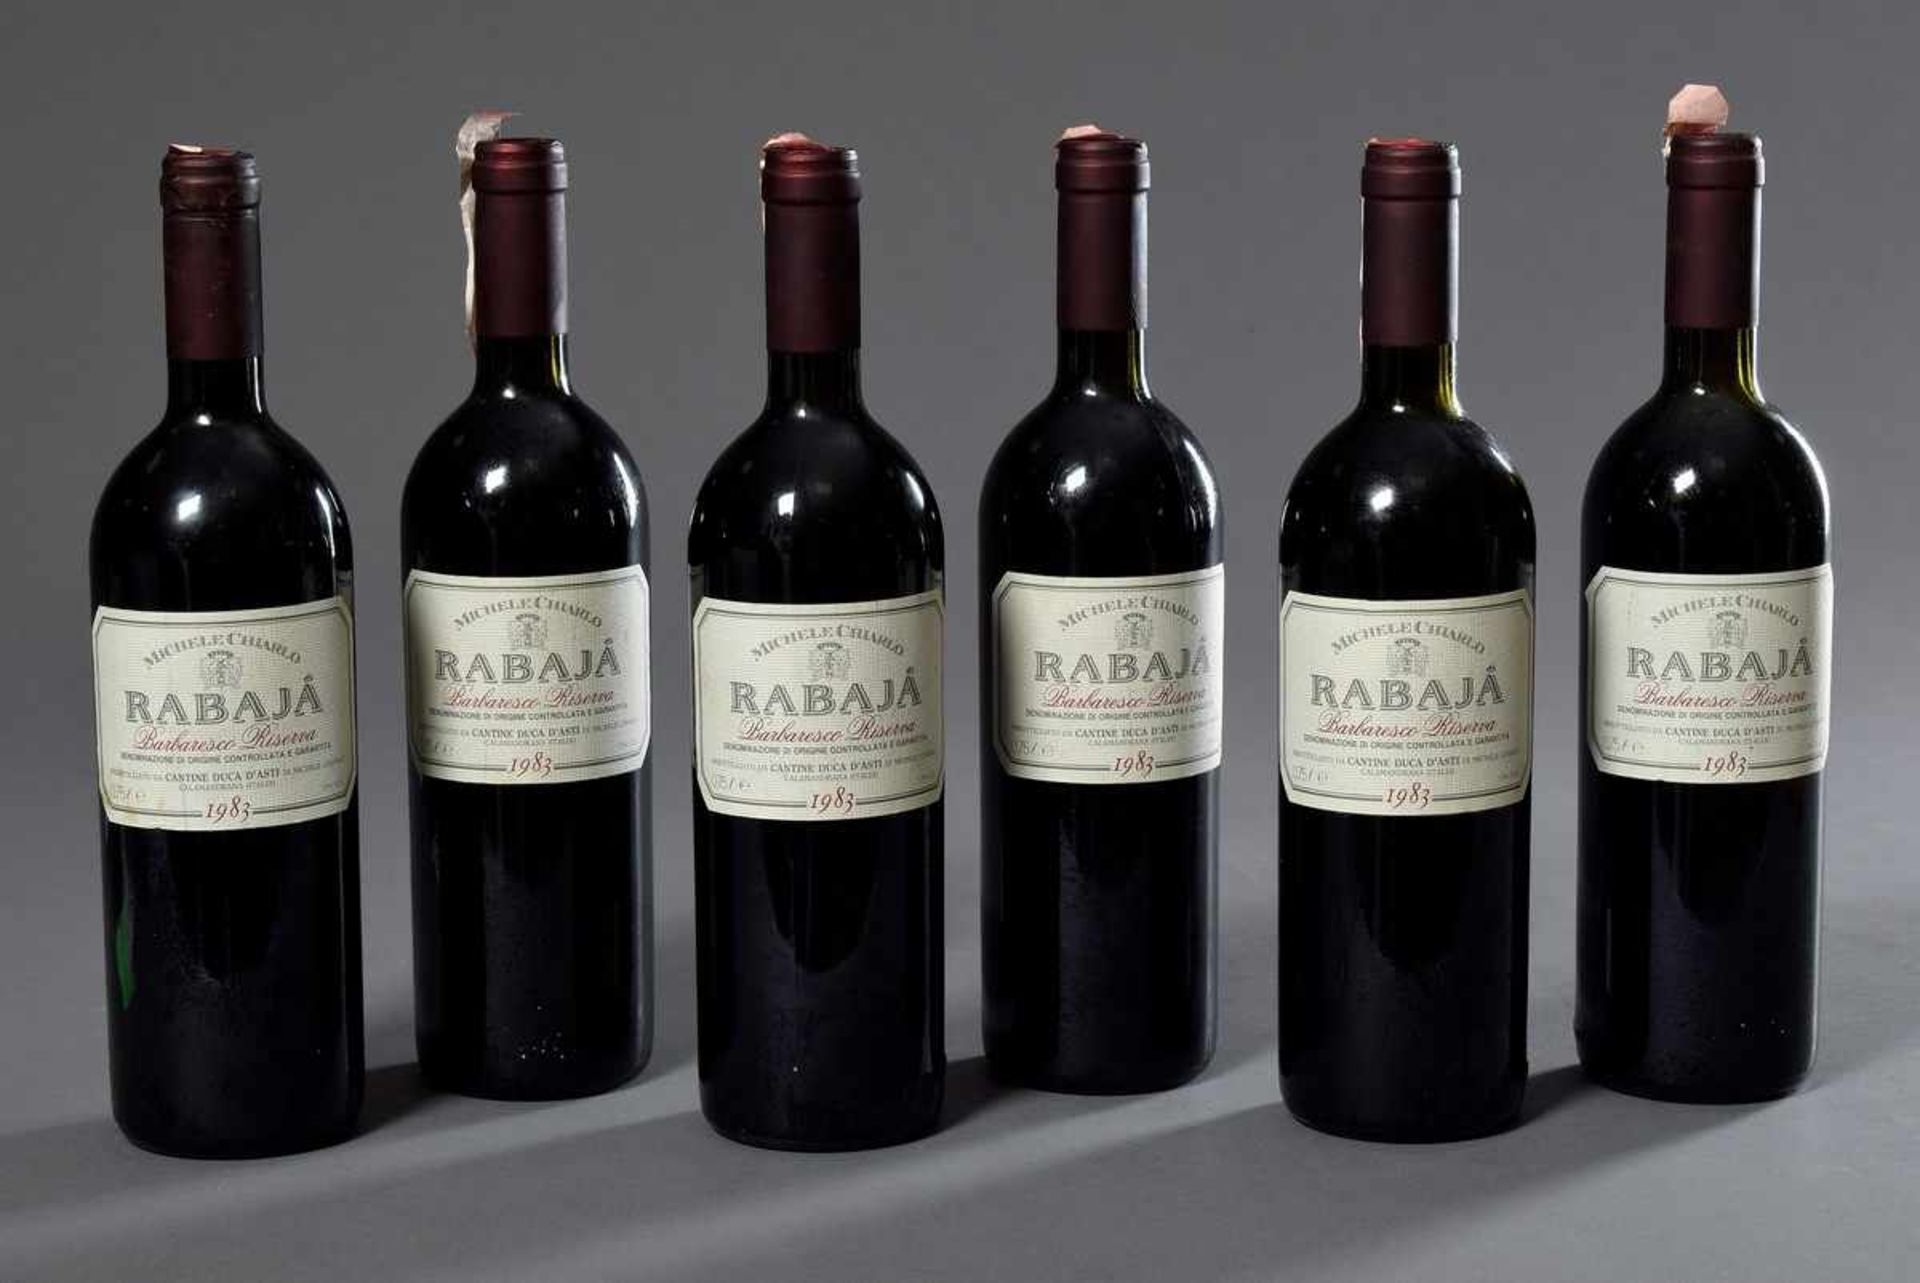 6 Flaschen Rotwein "Rabajá, Barbaresco Riversa, Michele Chiarlo", 1983, enthält Sulfite6 bottles